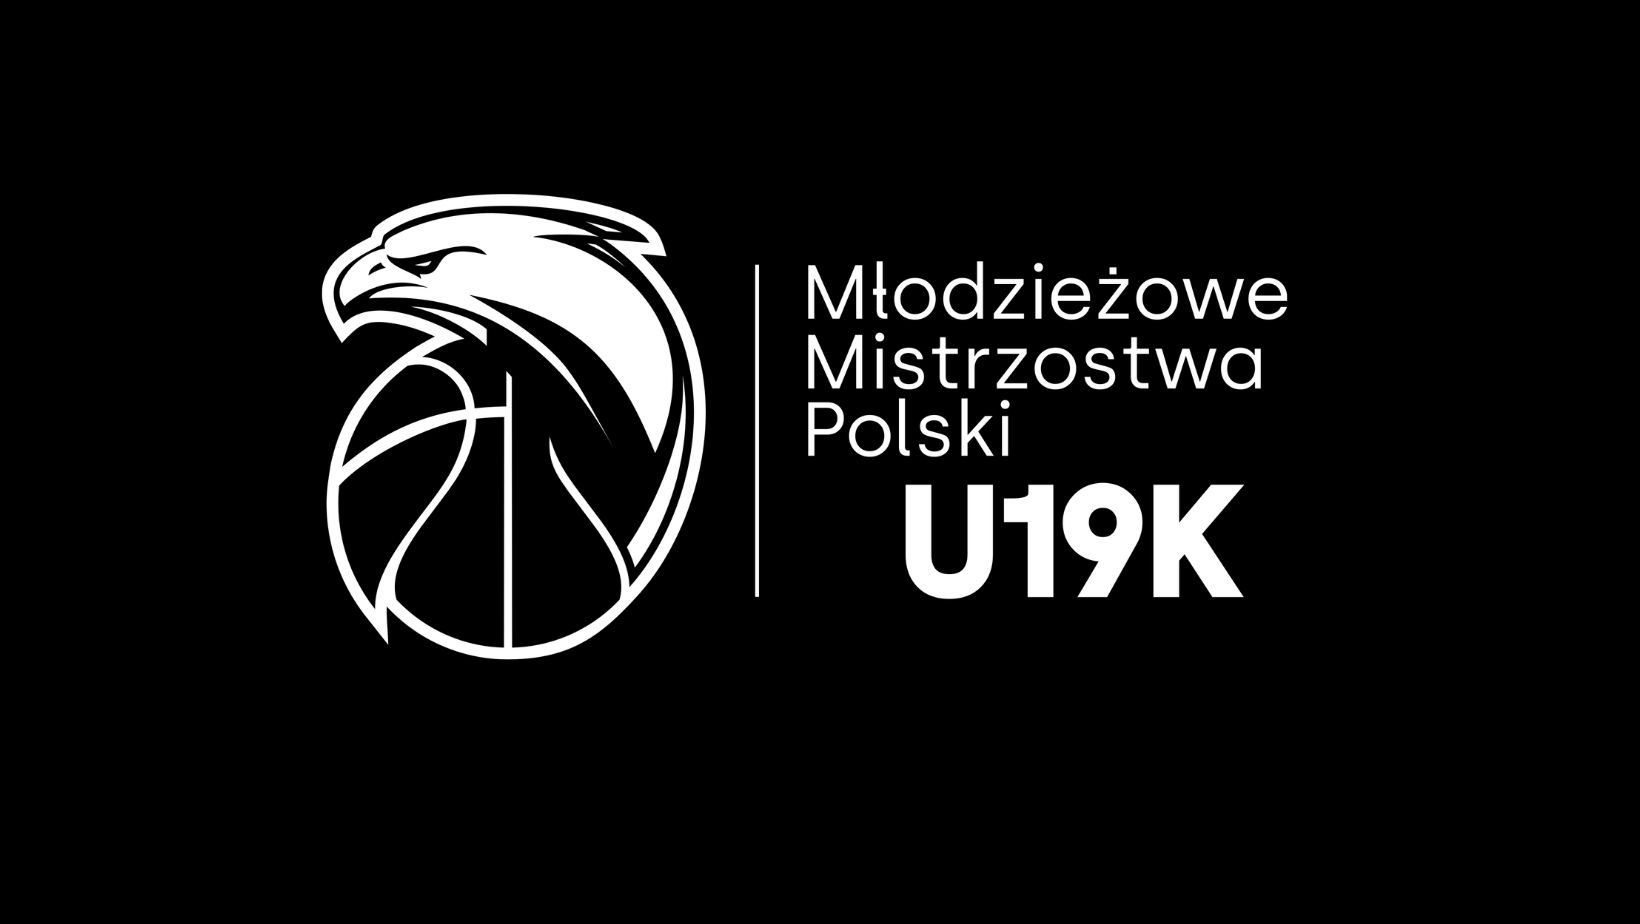 Ćwierćfinały U19K w Łodzi i Ksawerowie